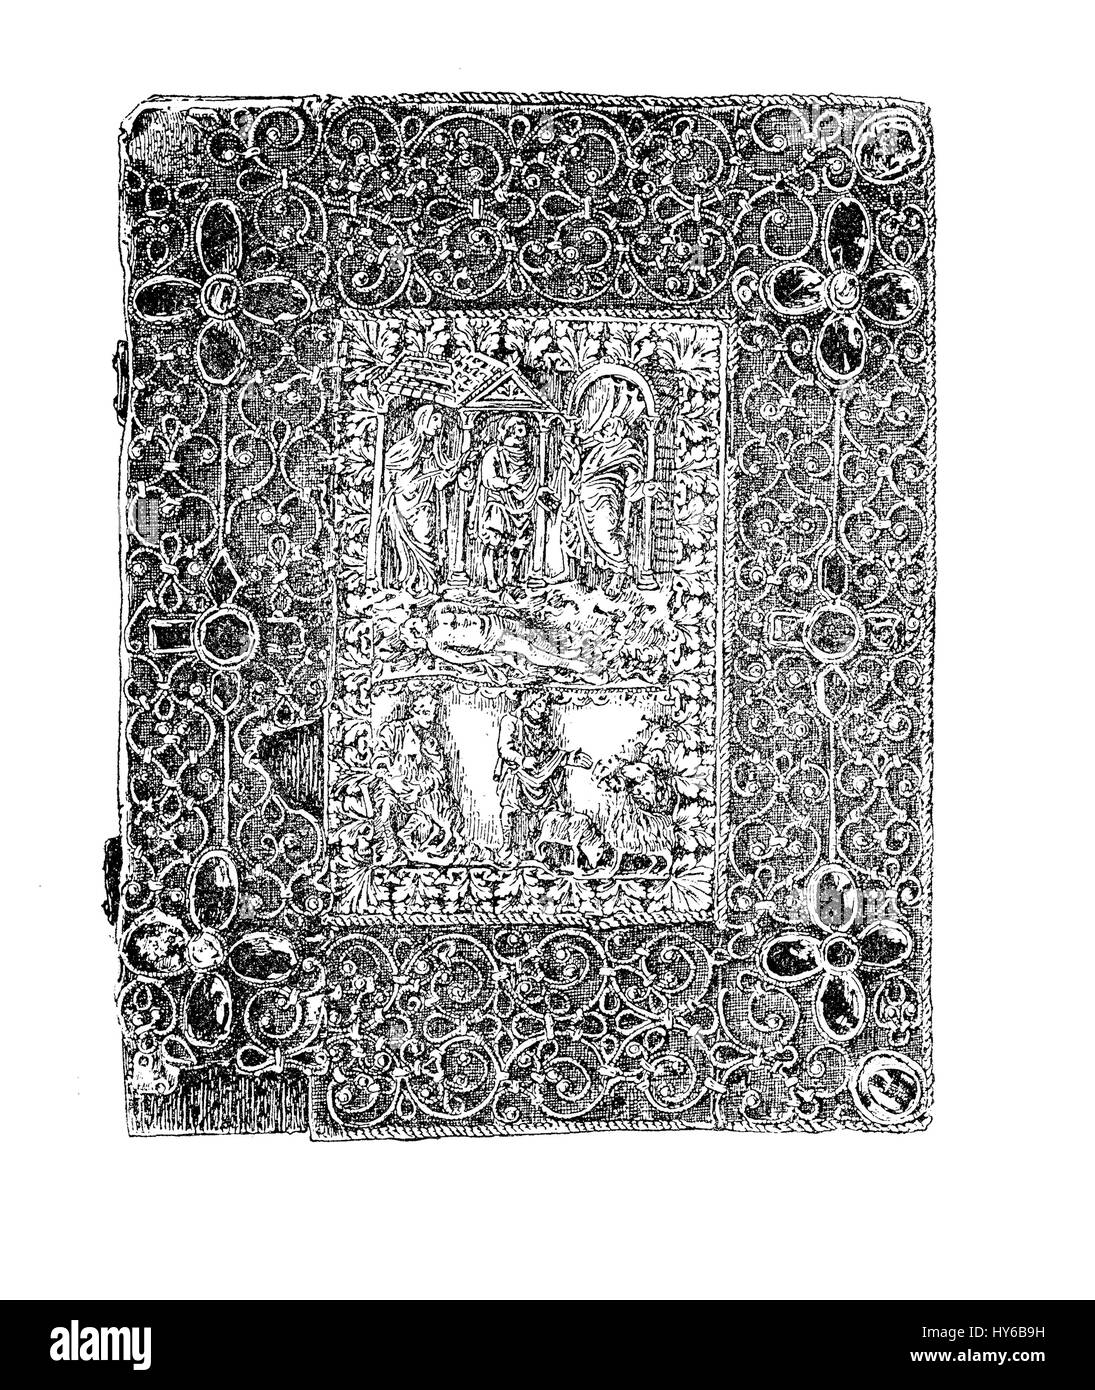 Mittelalterliche jeweled Buchbinderei mit Metallarbeiten, Elfenbeinschnitzereien und Juwelen, karolingischen Zeit, IX. Jh. Stockfoto